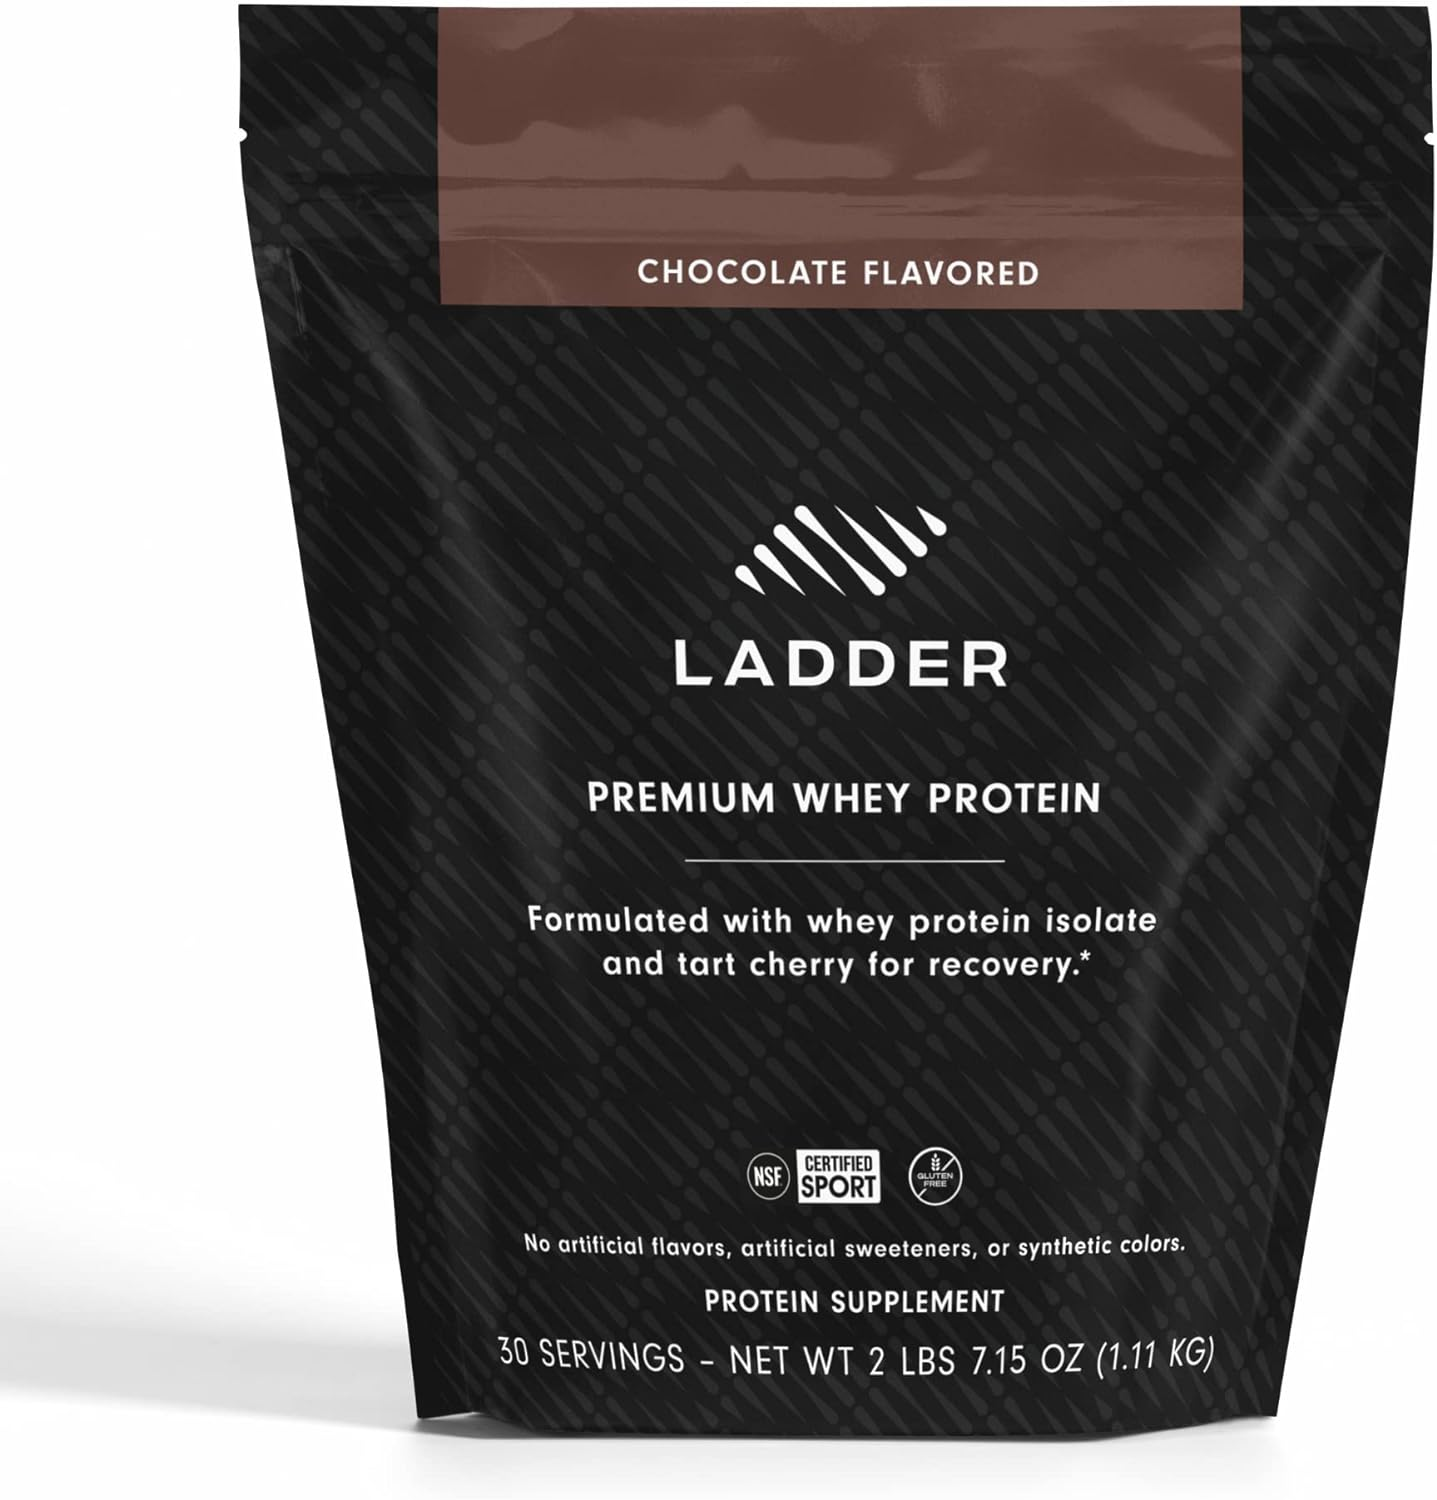 Ladder Whey Protein Powder